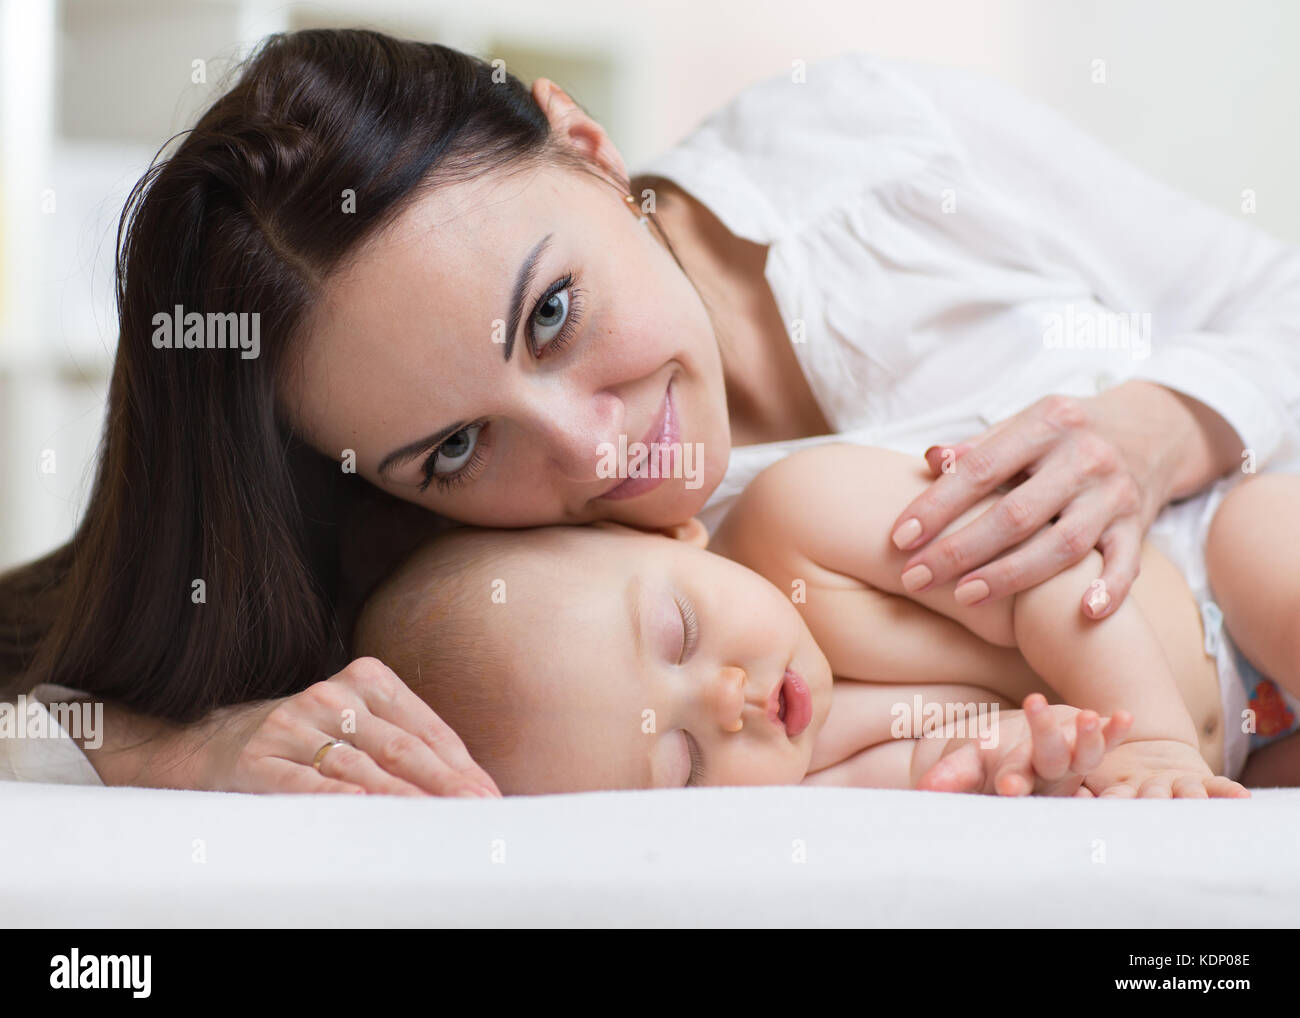 Fermer tourné d'une mère protégeant son sleeping newborn baby Banque D'Images